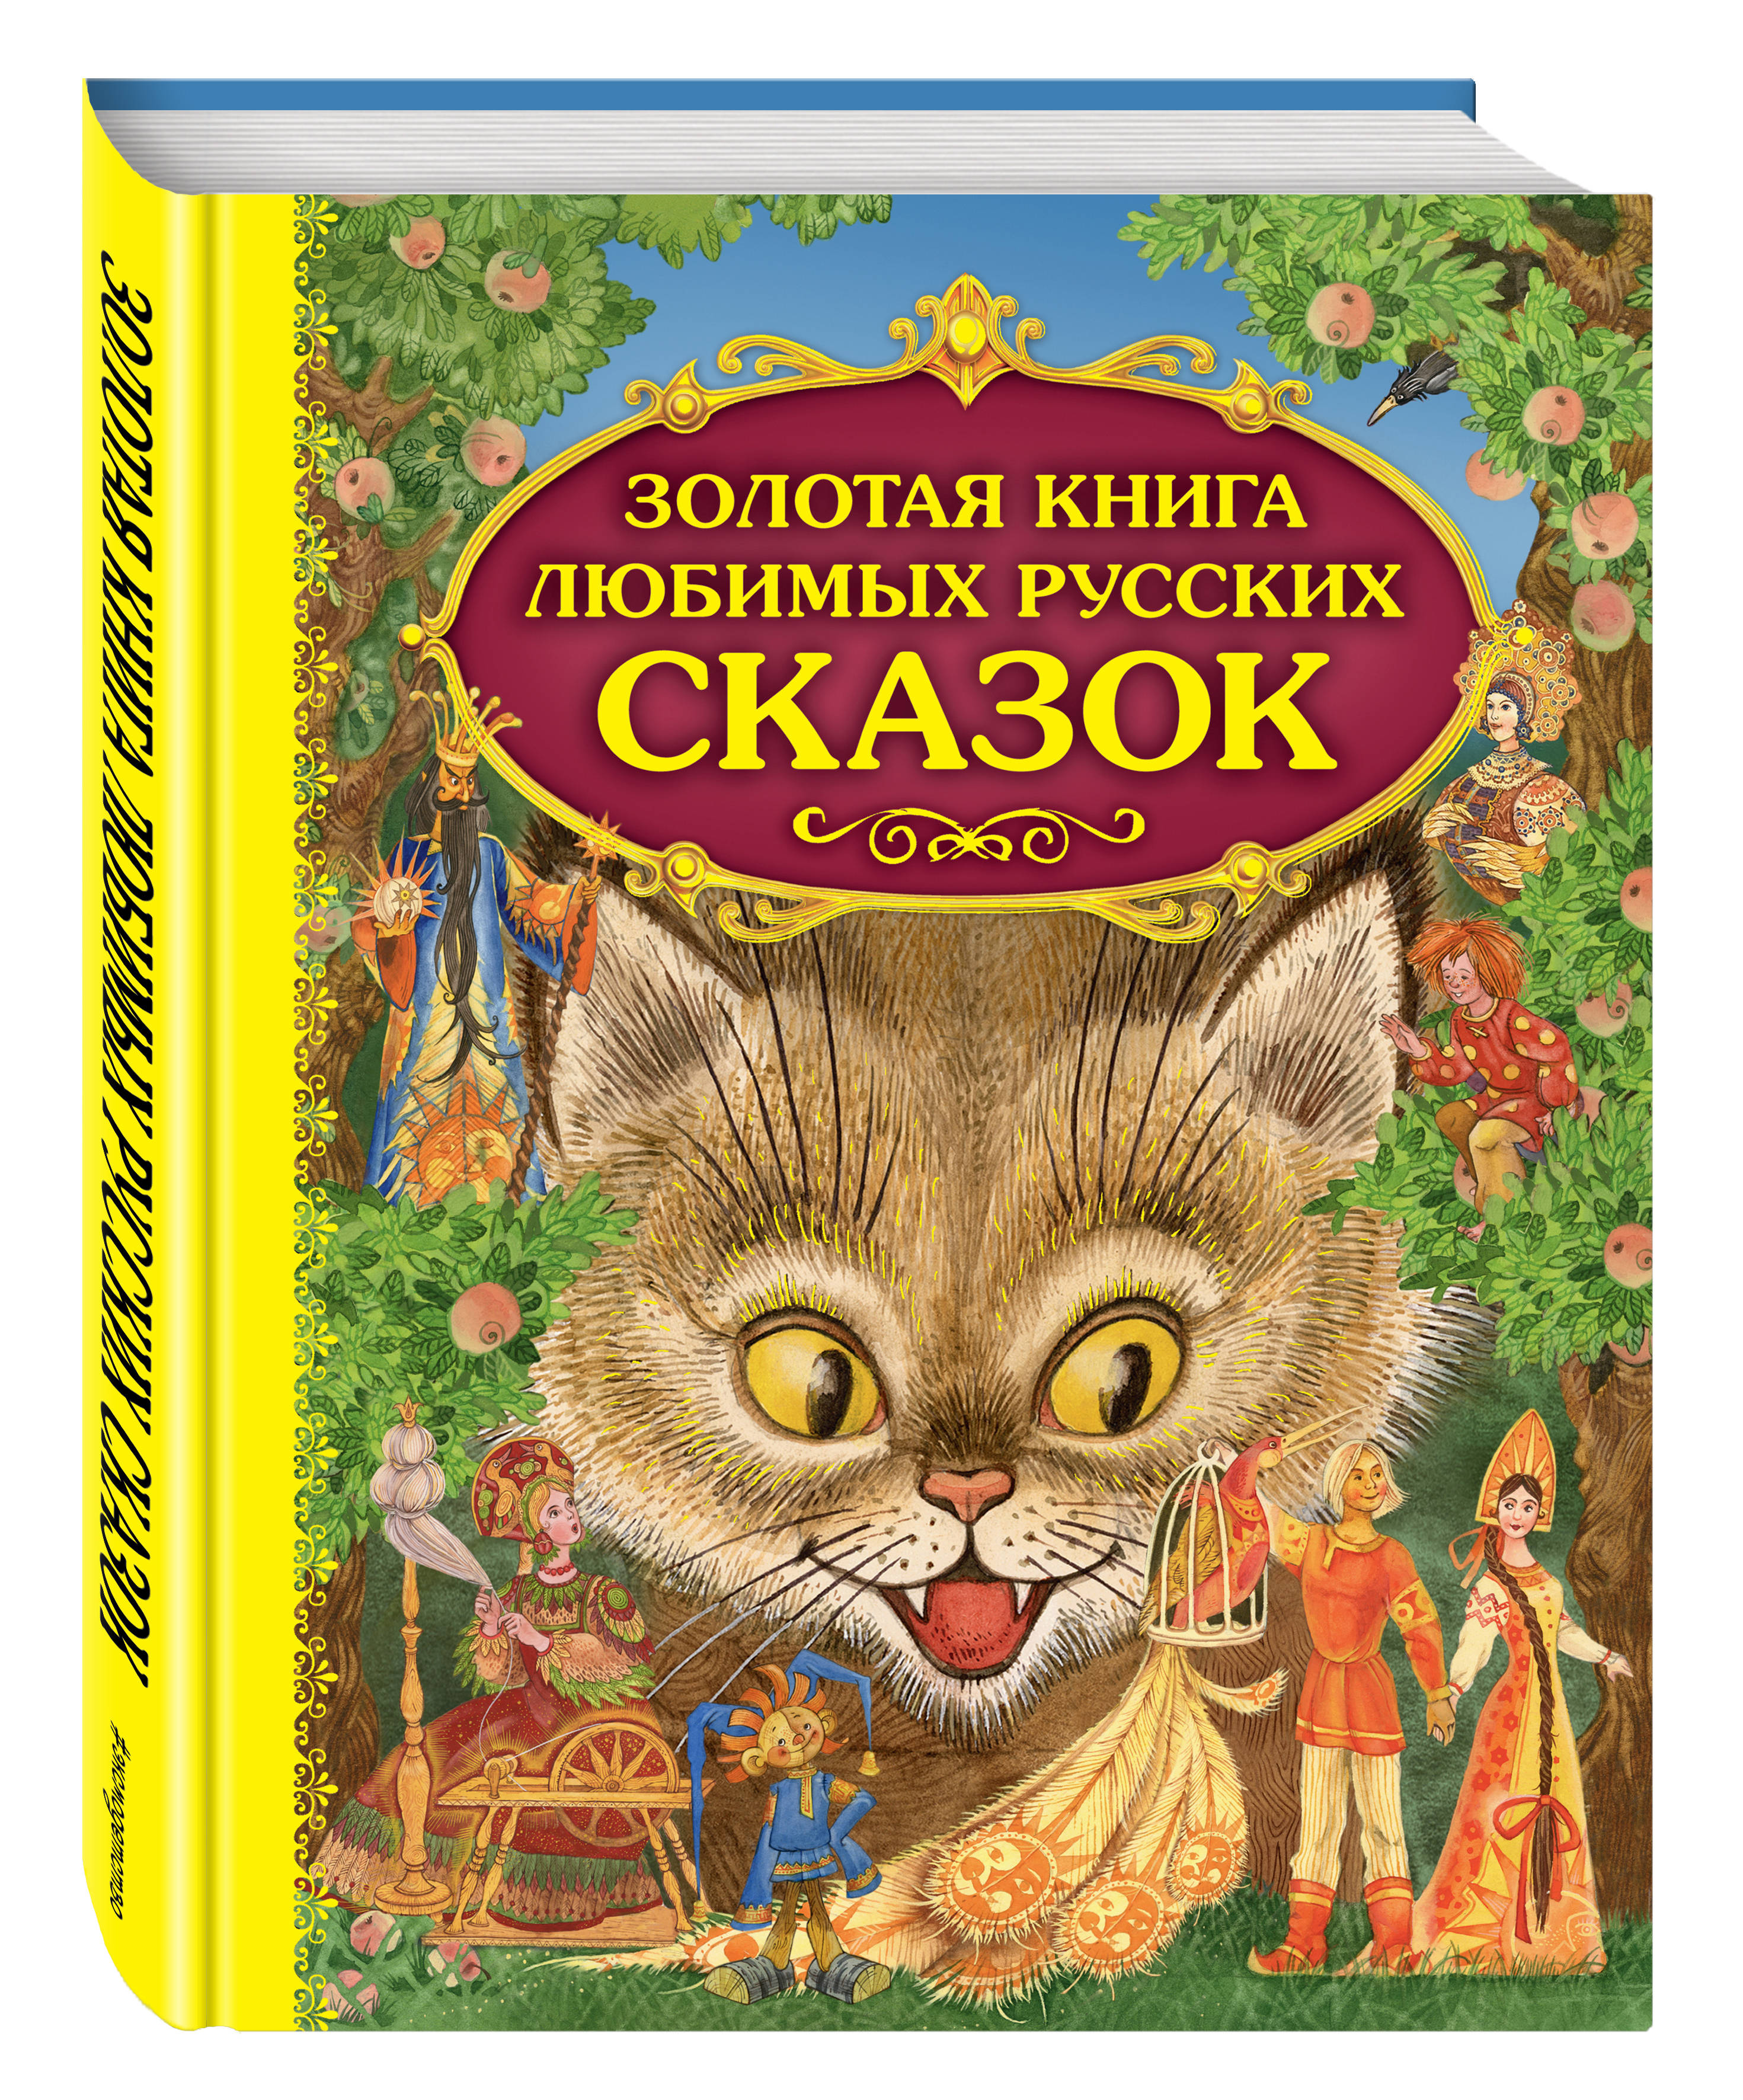 Русские книги сказки: Серии книг издательства ЭКСМО